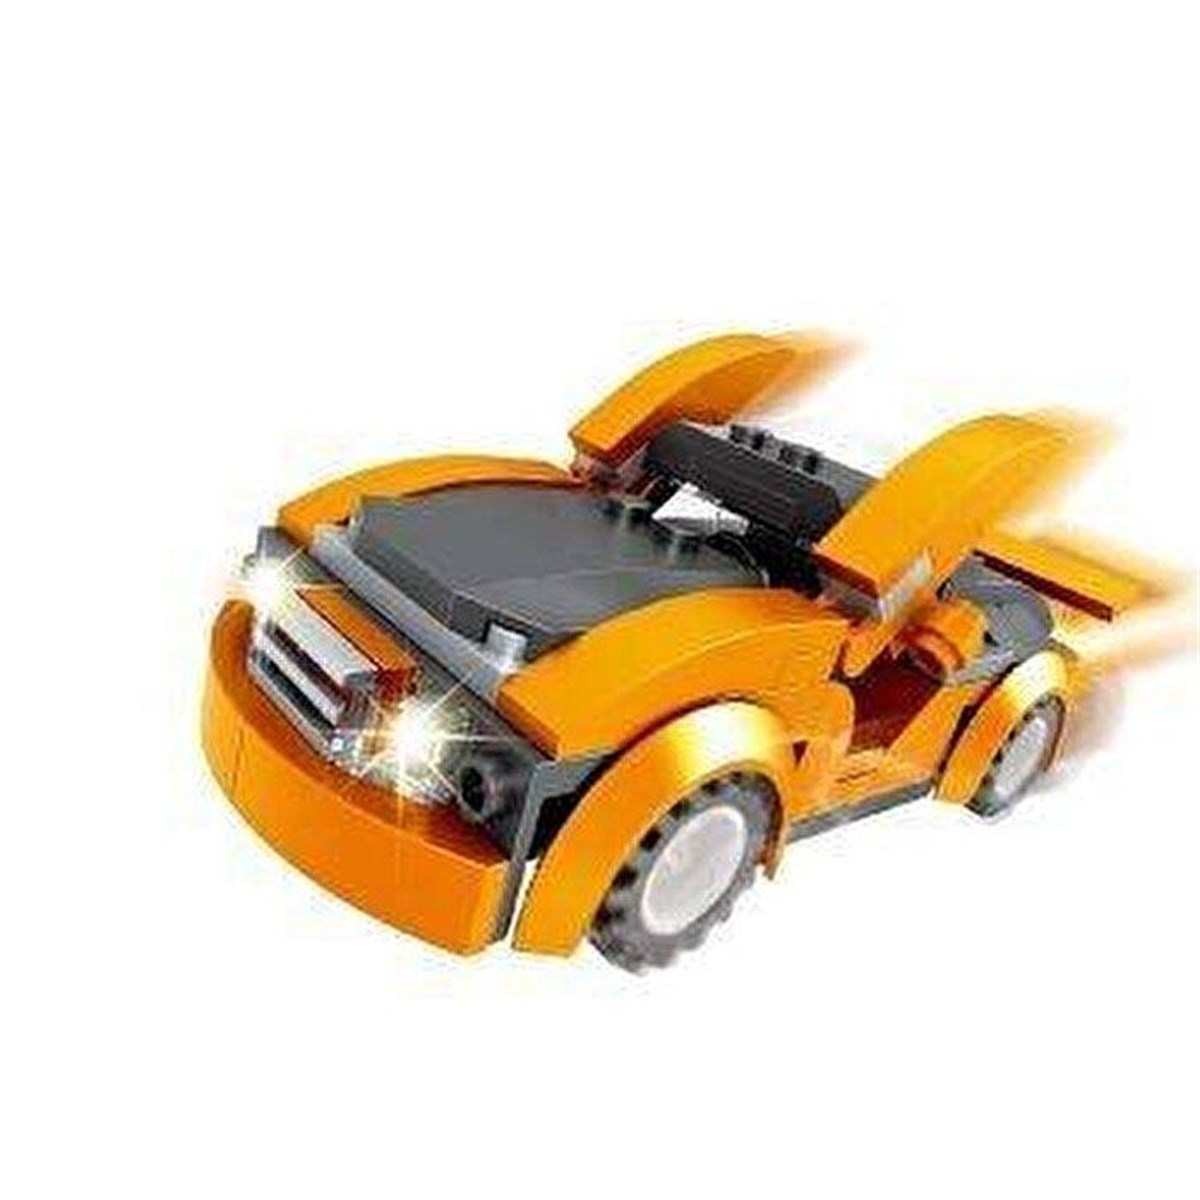 Ausini City Araba Yapım Lego Seti 97 Parça, Alışverişin Adresi'nde |  Shopiglo